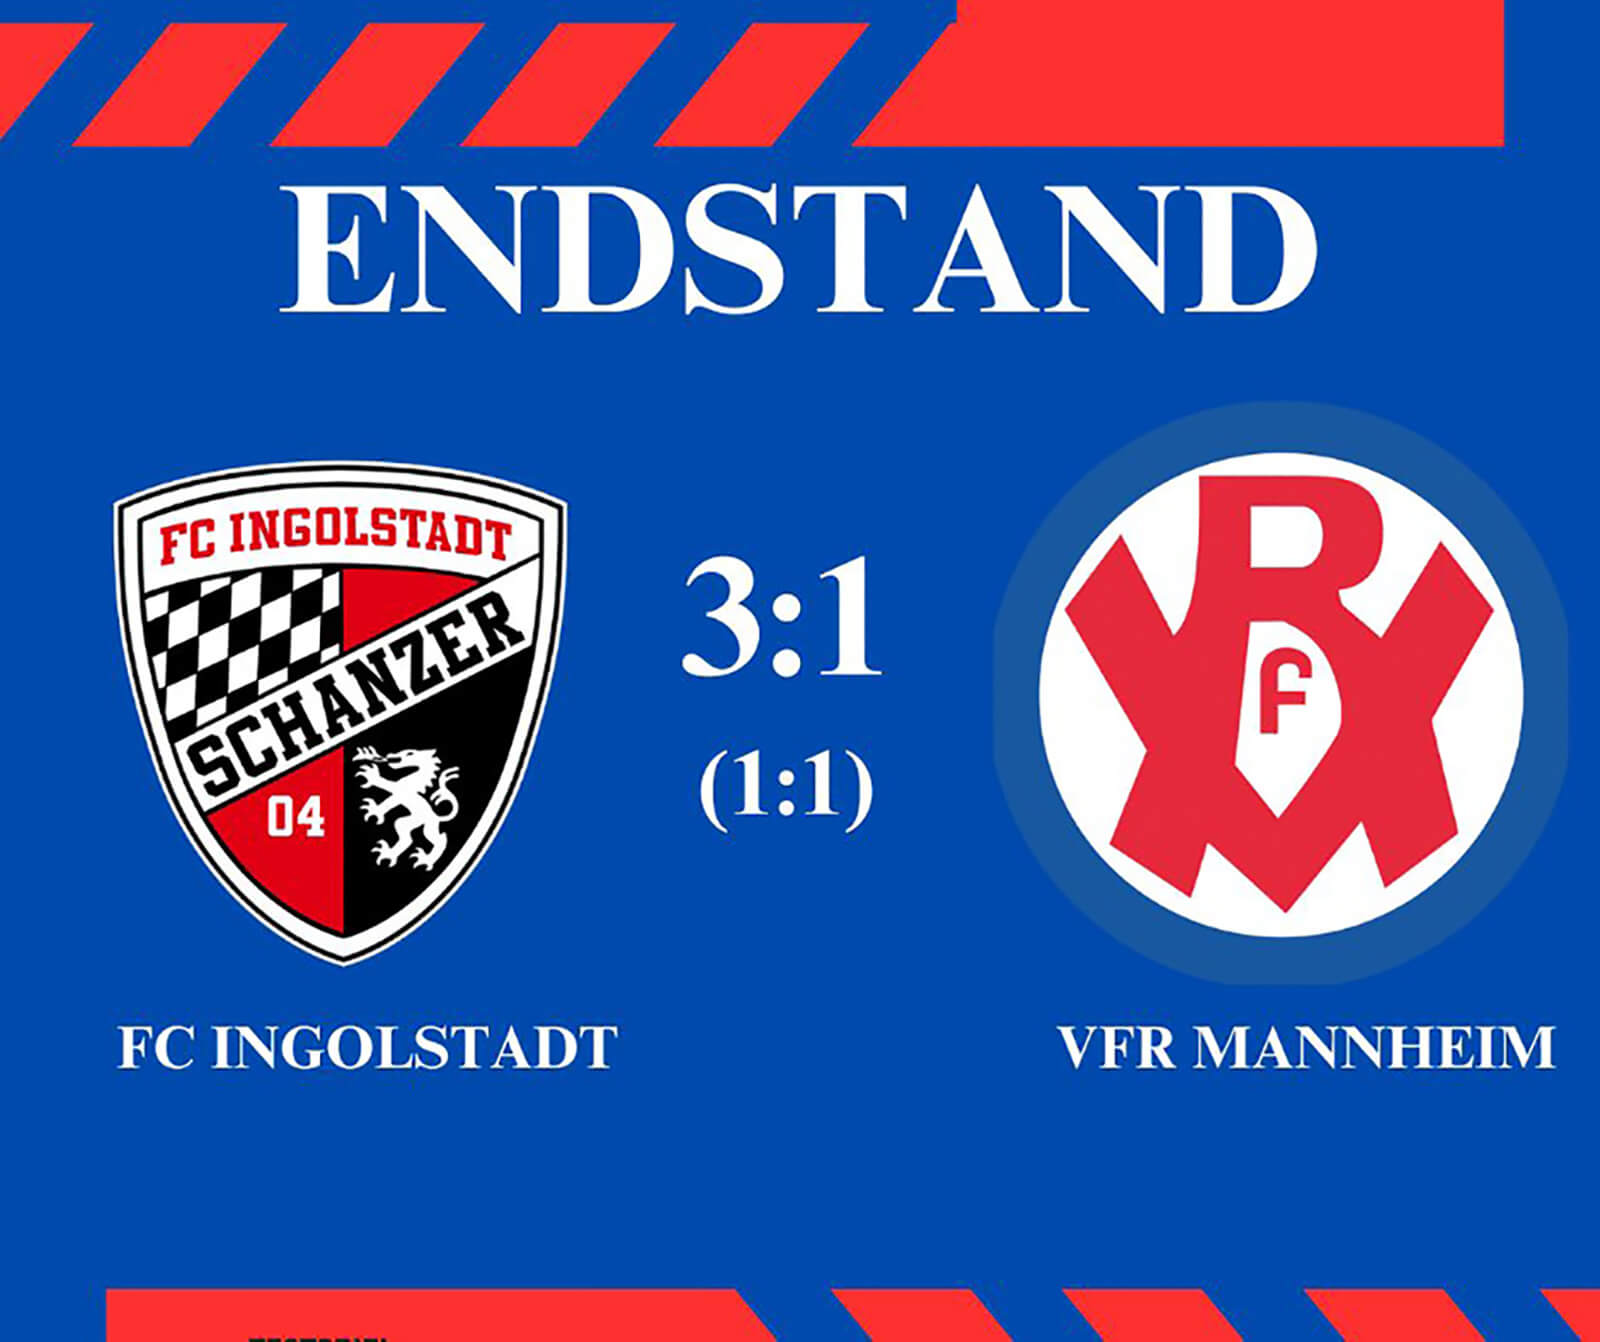 VfR Mannheim hielt bei einer 1:3 (1:1)-Niederlage gegen den FC Ingolstadt 04 über weite Strecken sehr gut dagegen